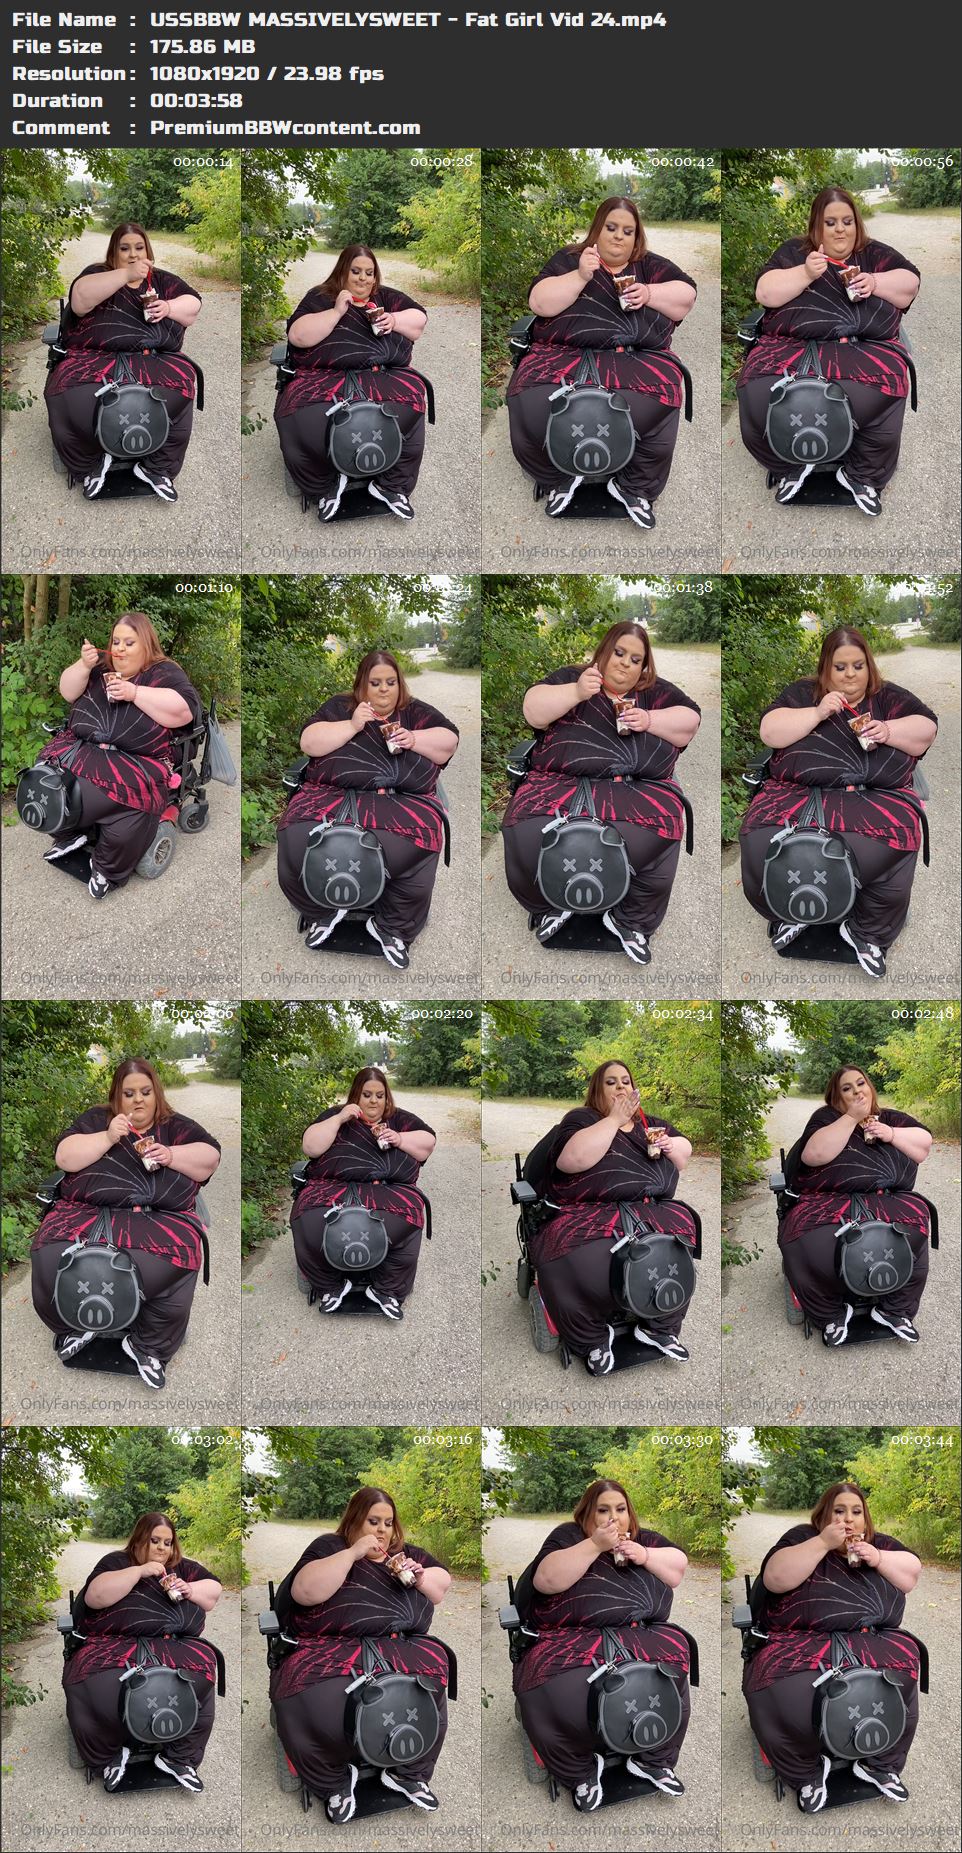 USSBBW MASSIVELYSWEET - Fat Girl Vid 24 thumbnails